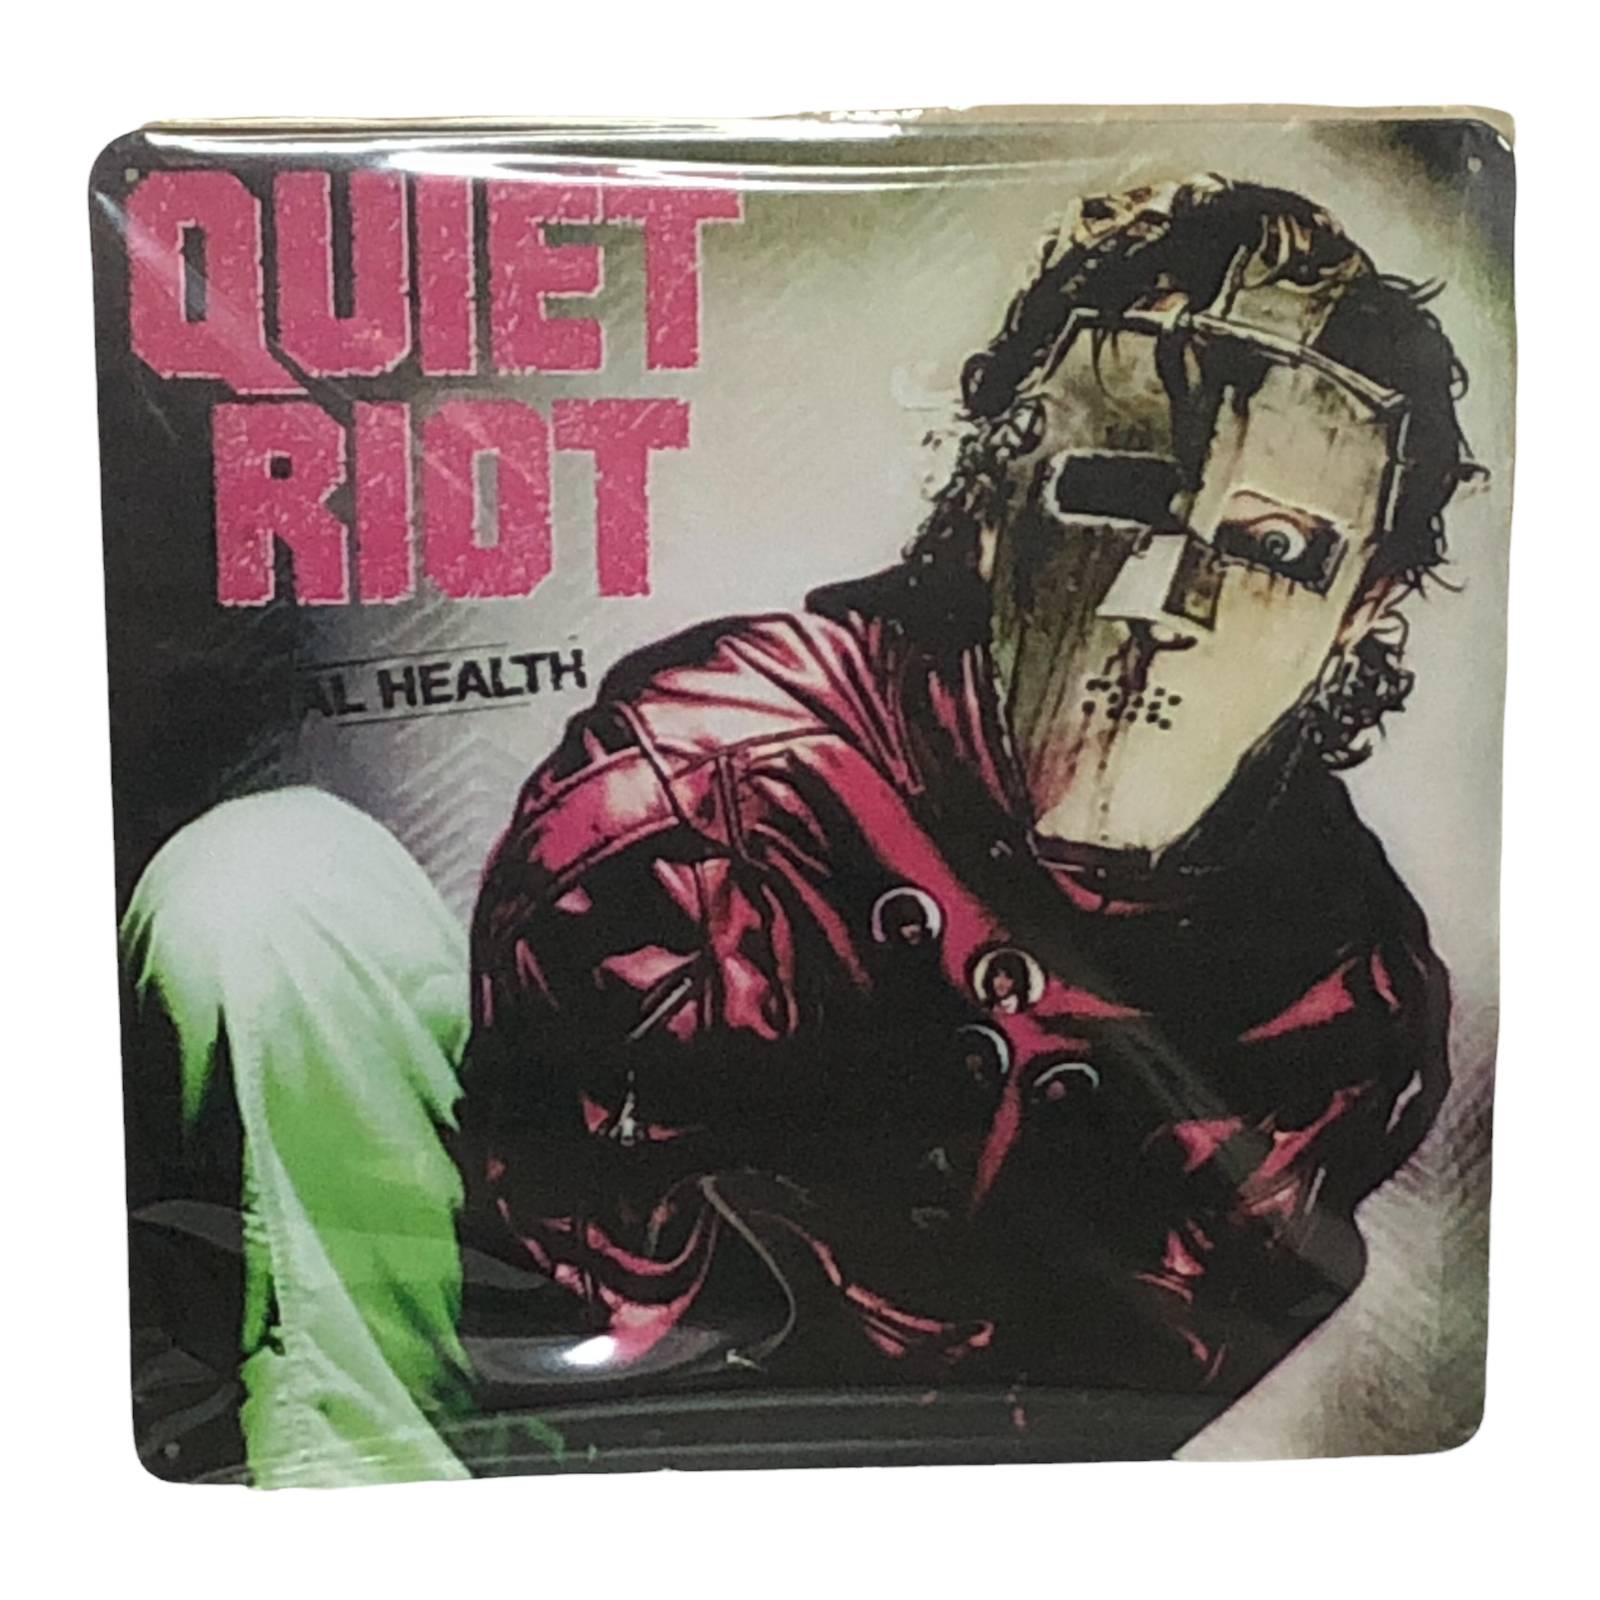 quiet riot album covers